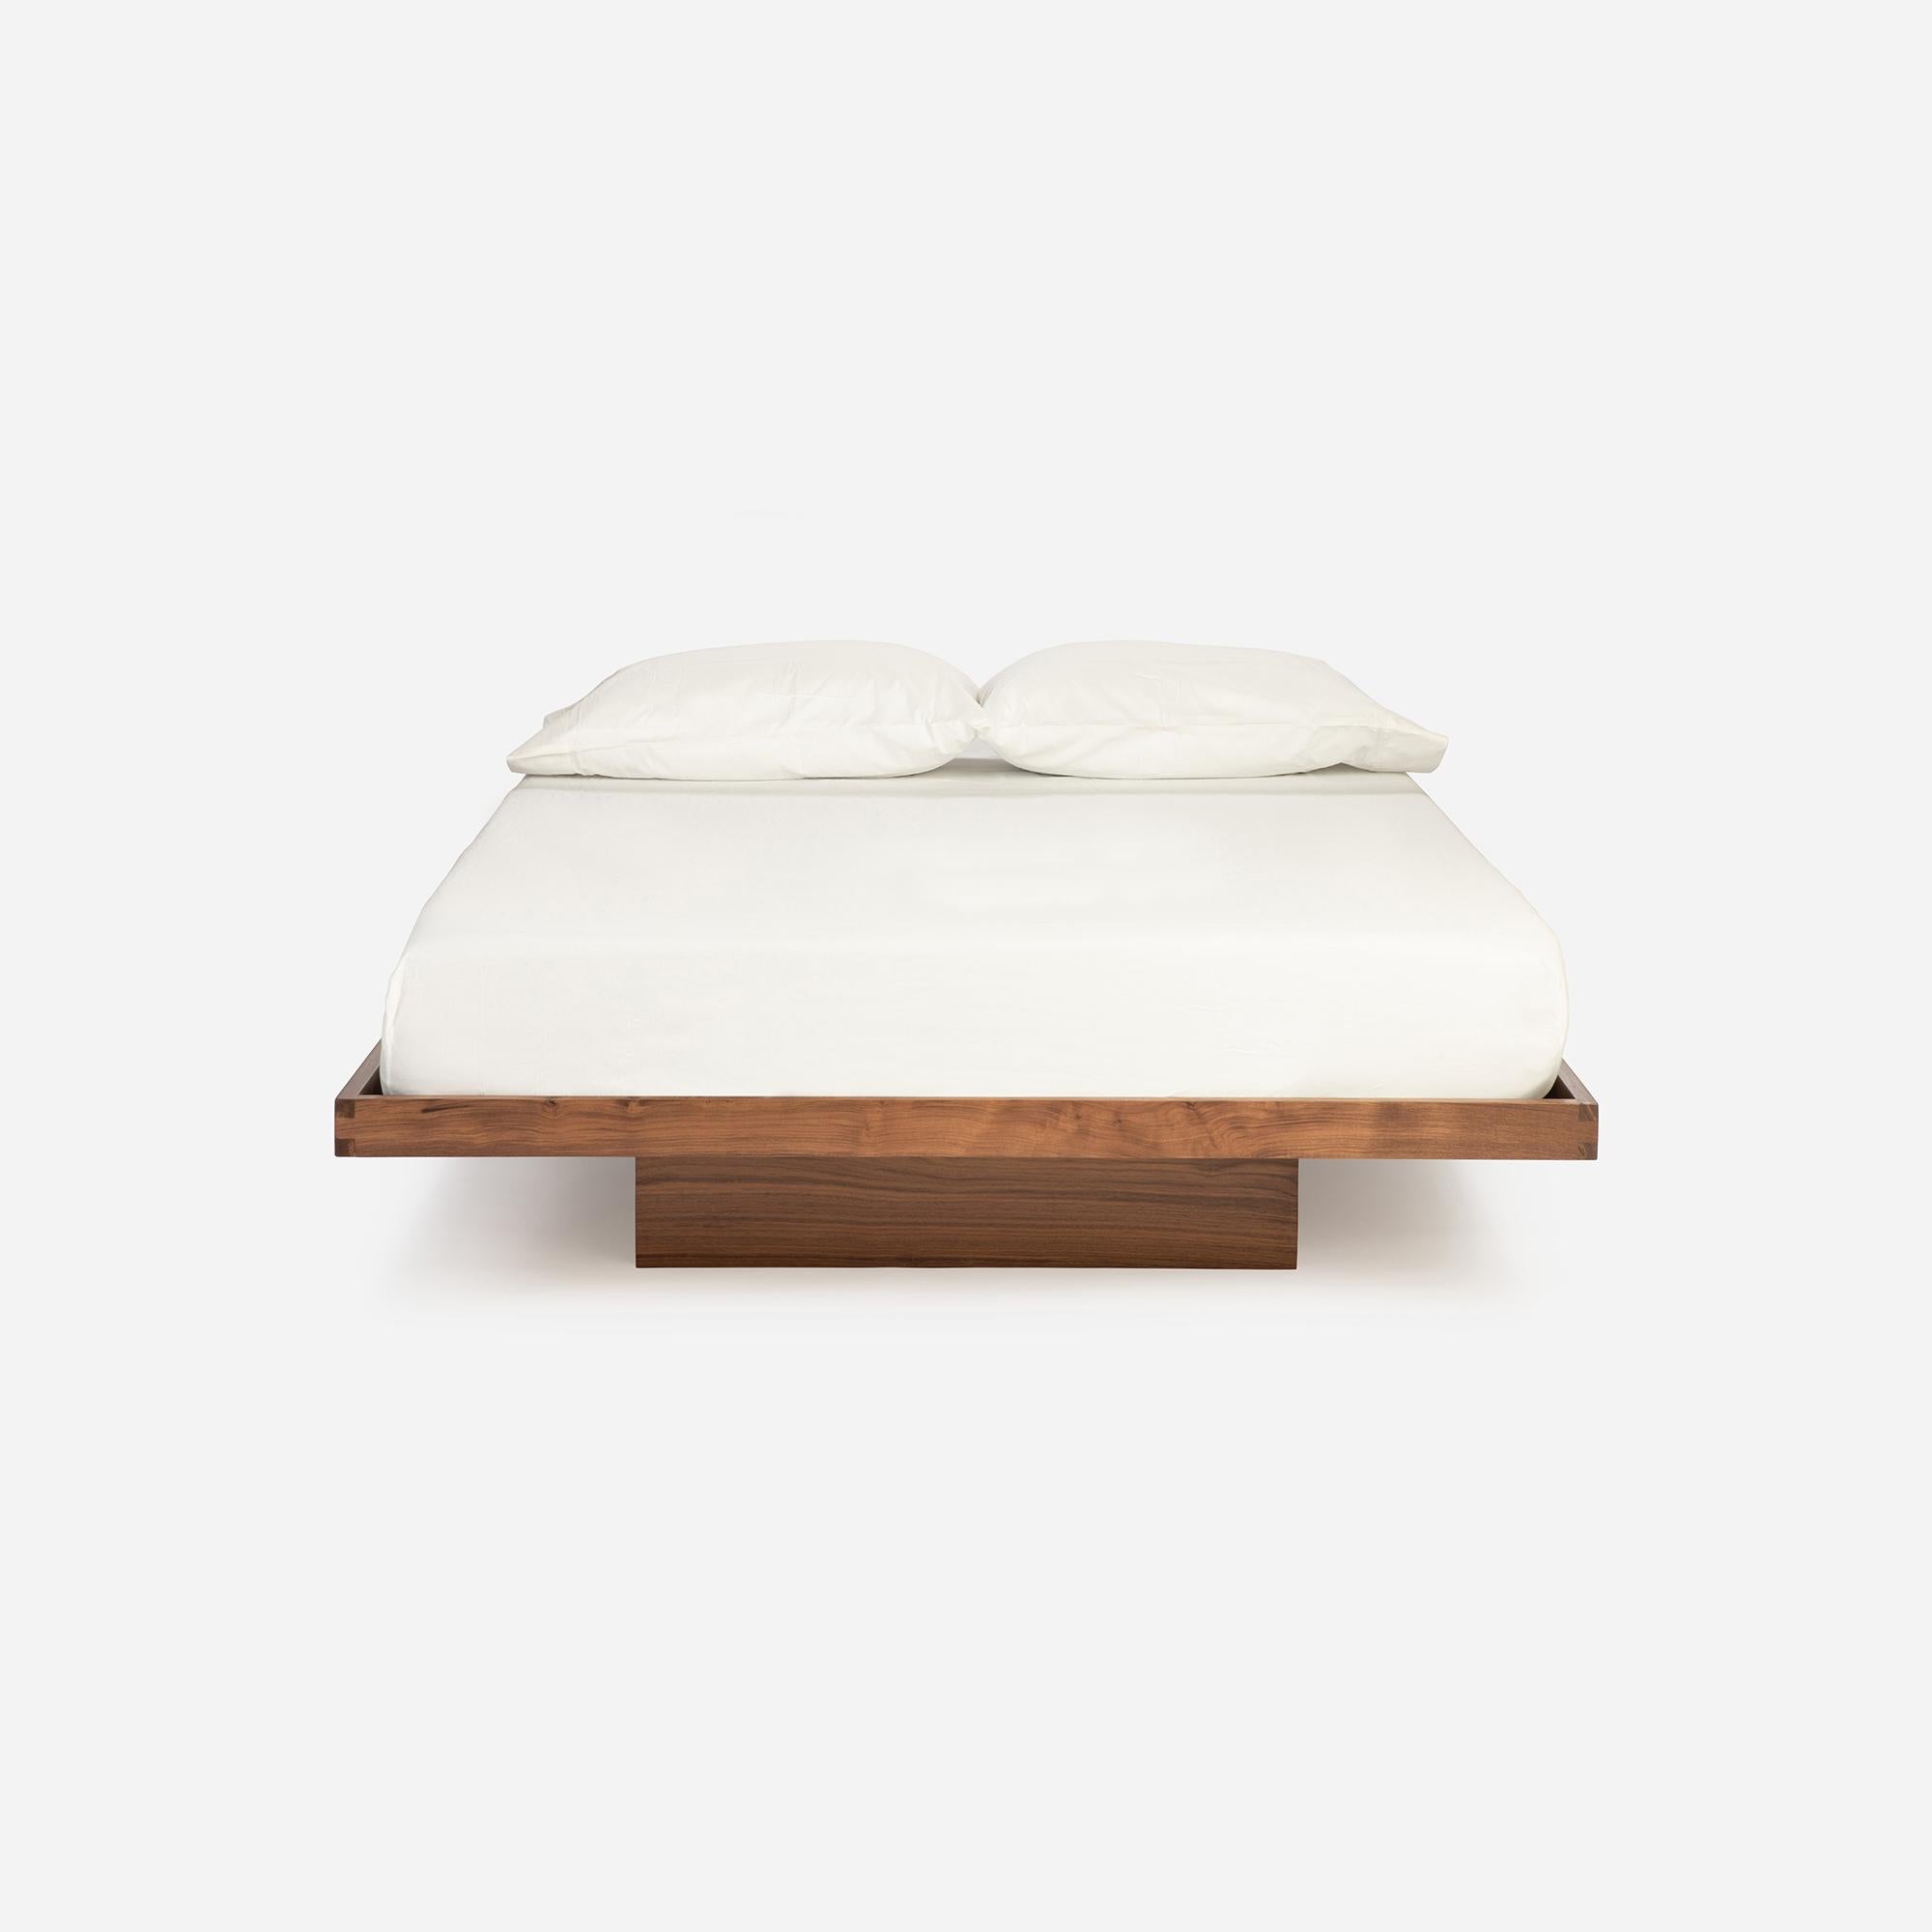 Le lit plate-forme flottant est un chef-d'œuvre du milieu du siècle. Lorsque Mel a conçu le lit plate-forme, il s'est concentré sur le terme japonais Shibui, dont il a compris qu'il signifiait une magnifique simplicité, une élégance de bon goût. Il